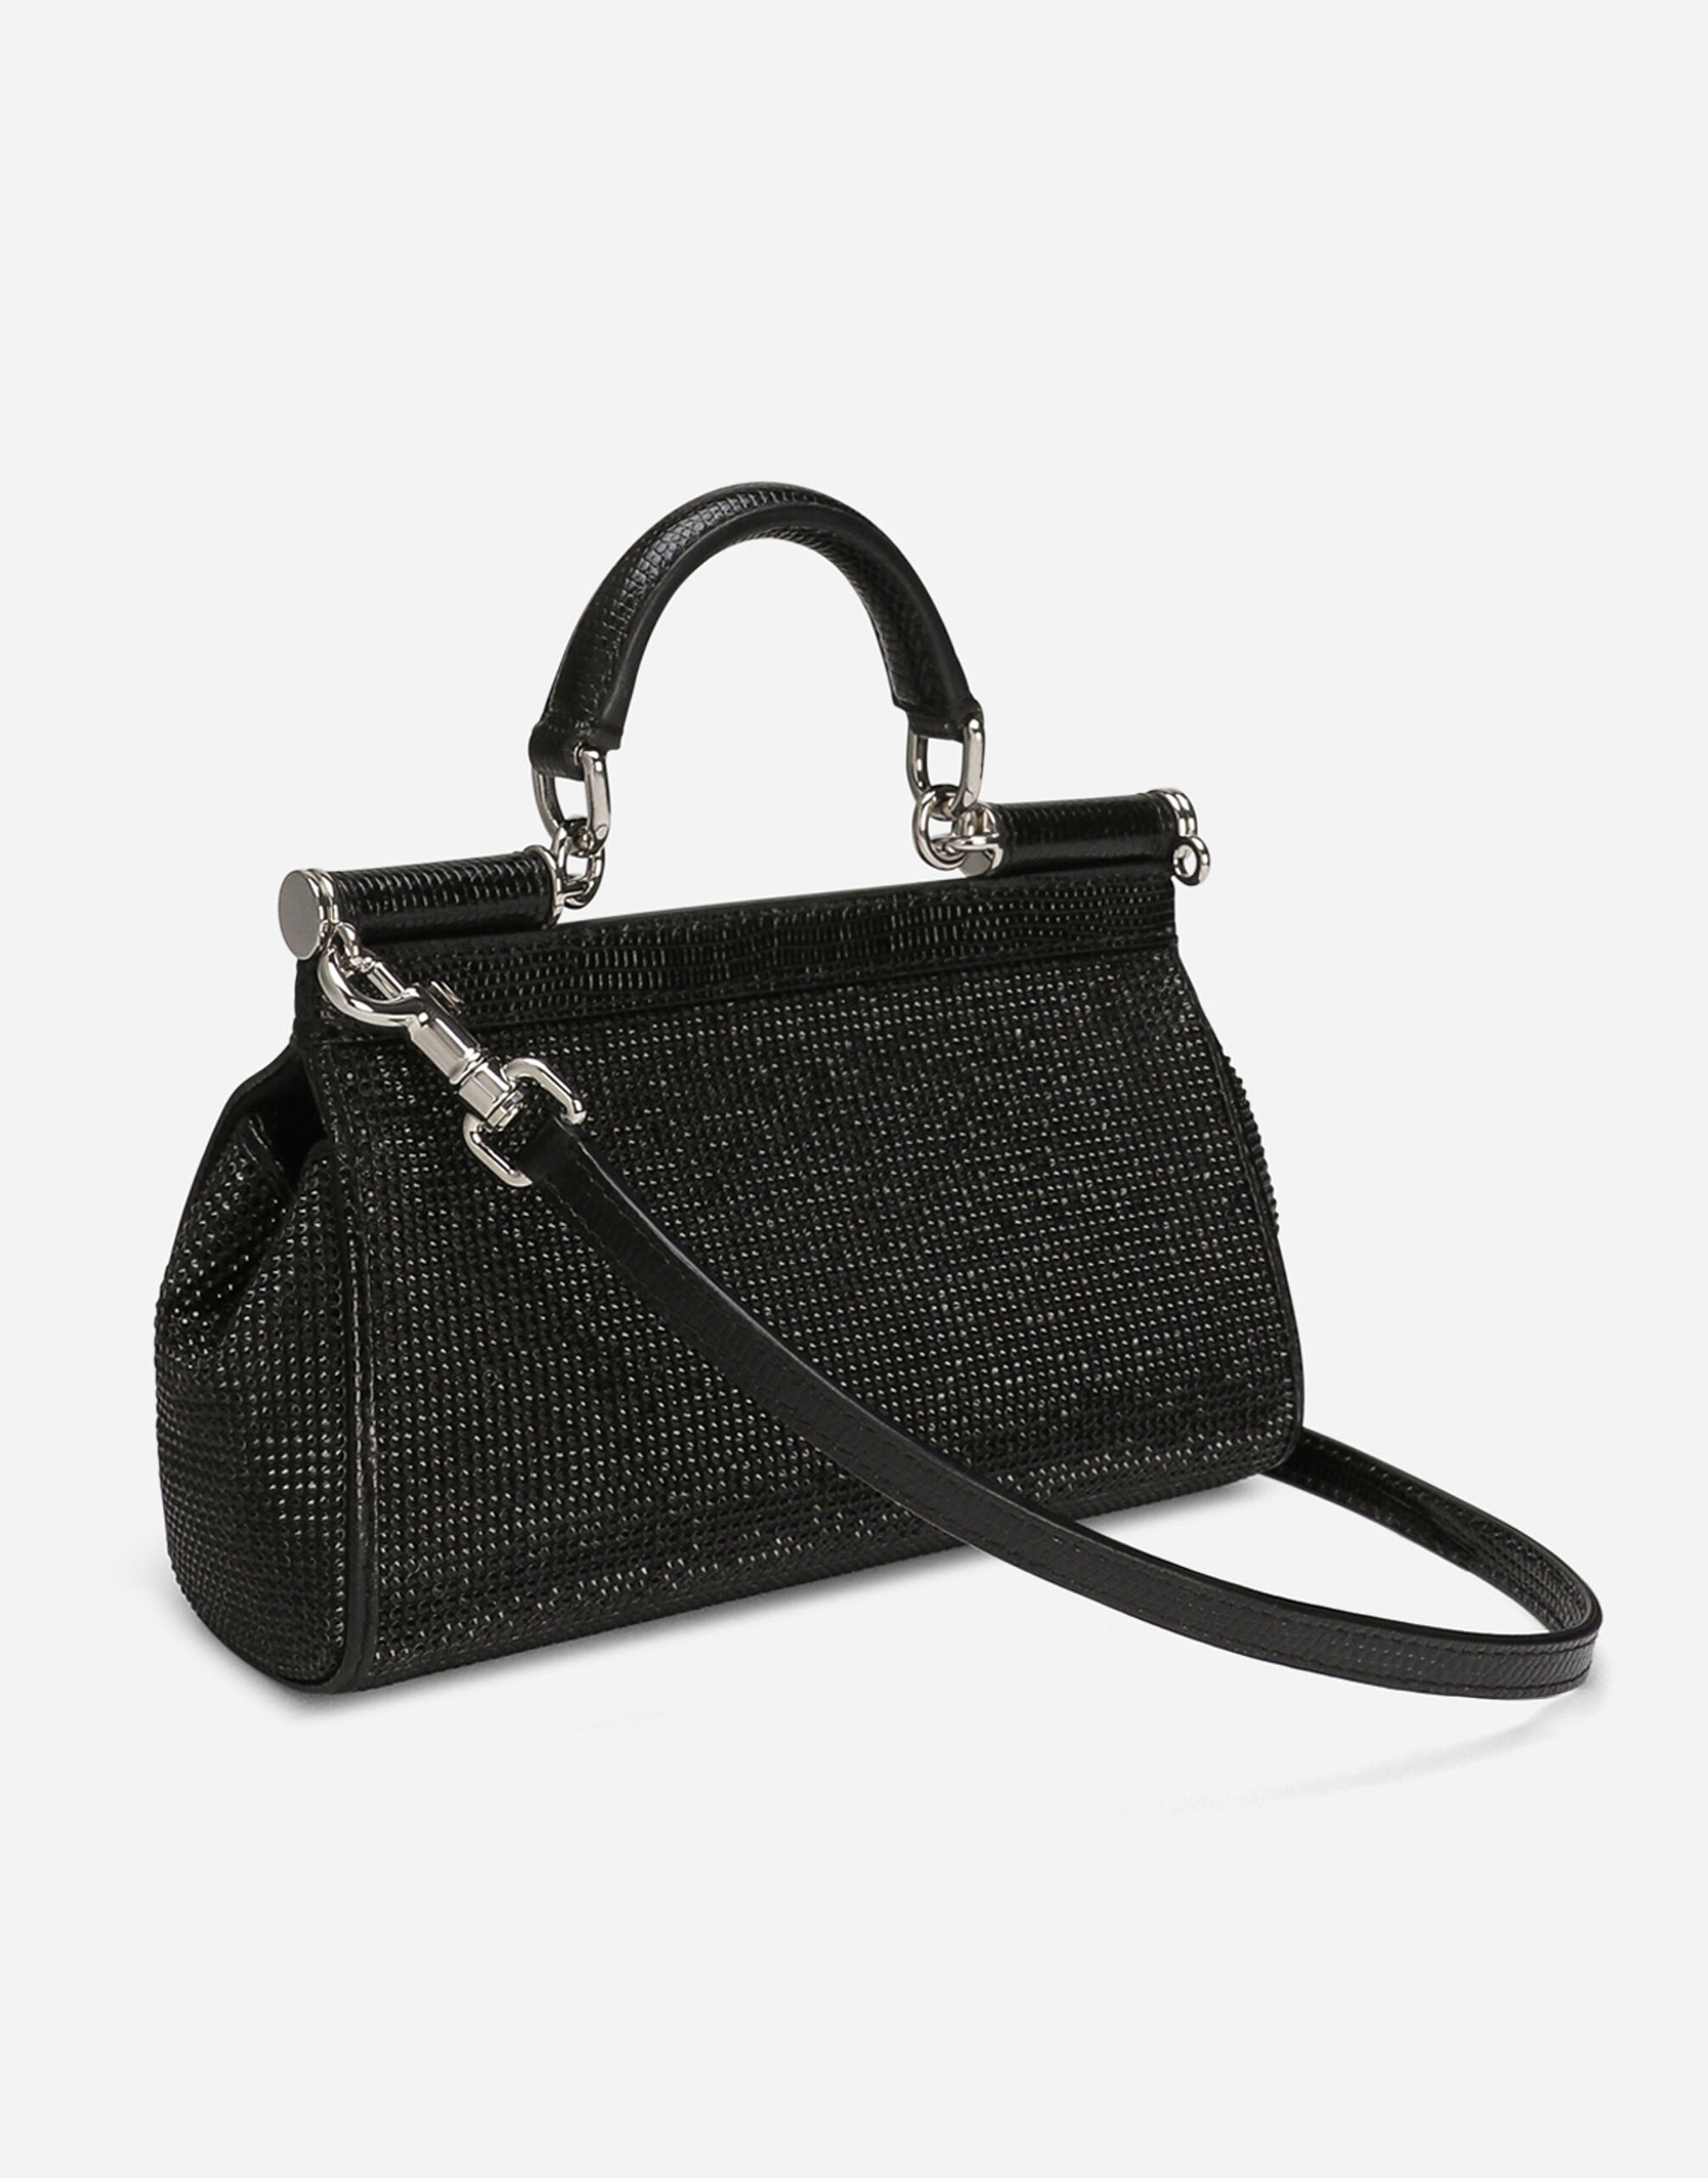 Dolce & Gabbana Brass Hardware Handbags | Mercari